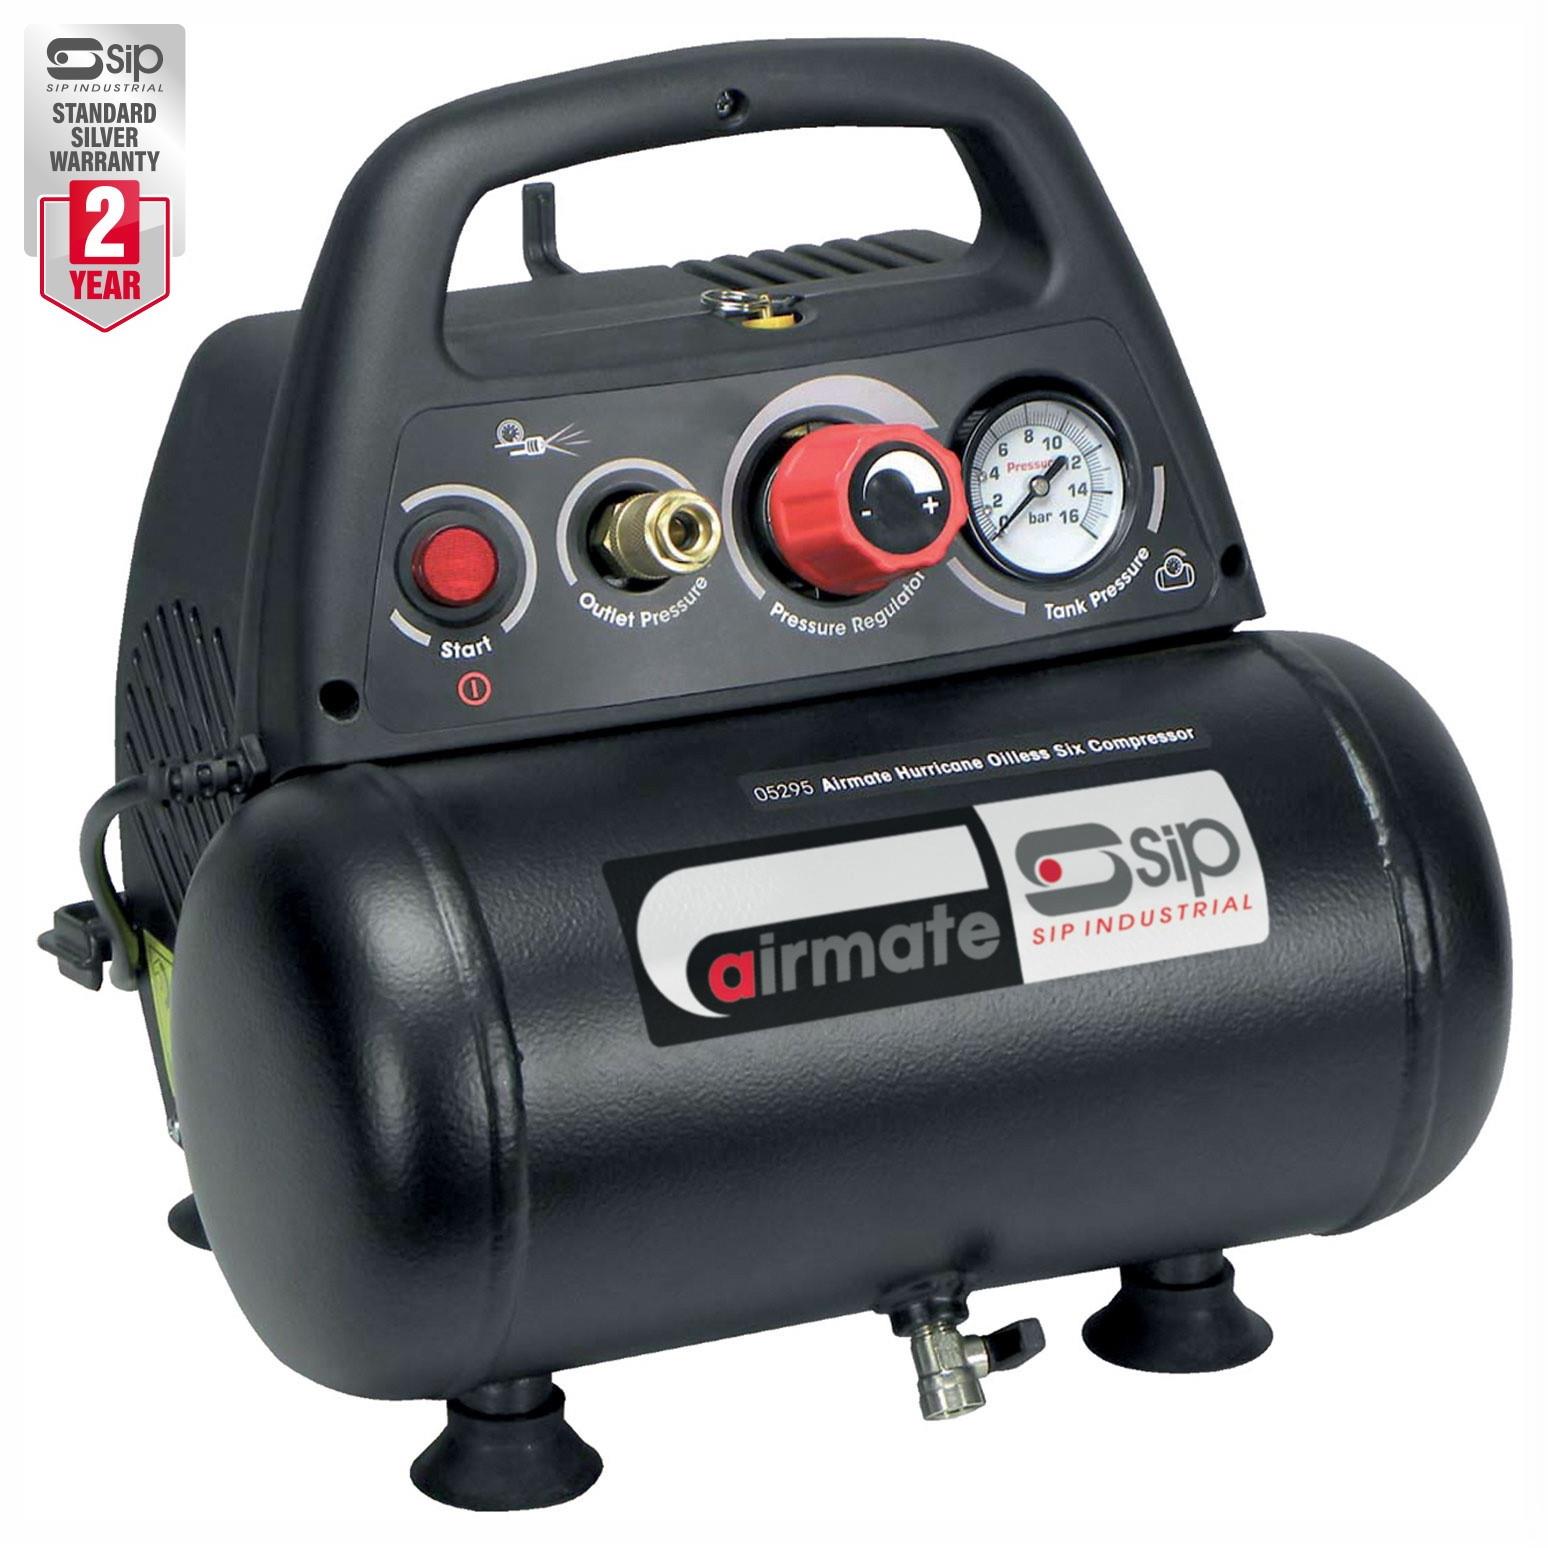 SIP 05295 Airmate Mini Compressor; 240 Volt; 6 Litre Air Receiver; 116psi (8 Bar) Pressure